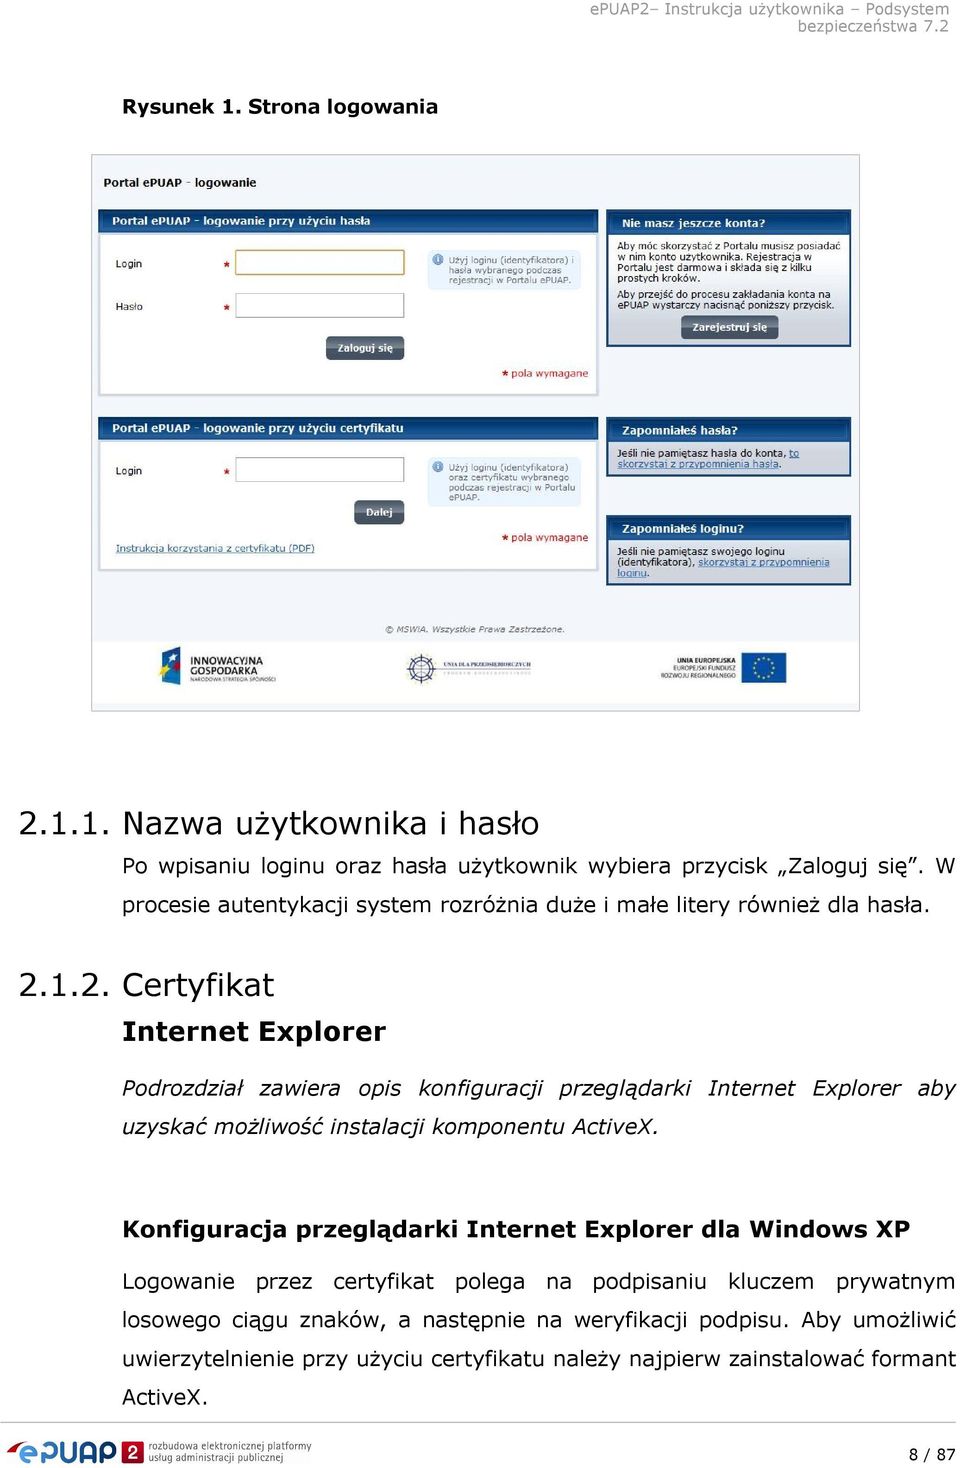 1.2. Certyfikat Internet Explorer Podrozdział zawiera opis konfiguracji przeglądarki Internet Explorer aby uzyskać możliwość instalacji komponentu ActiveX.